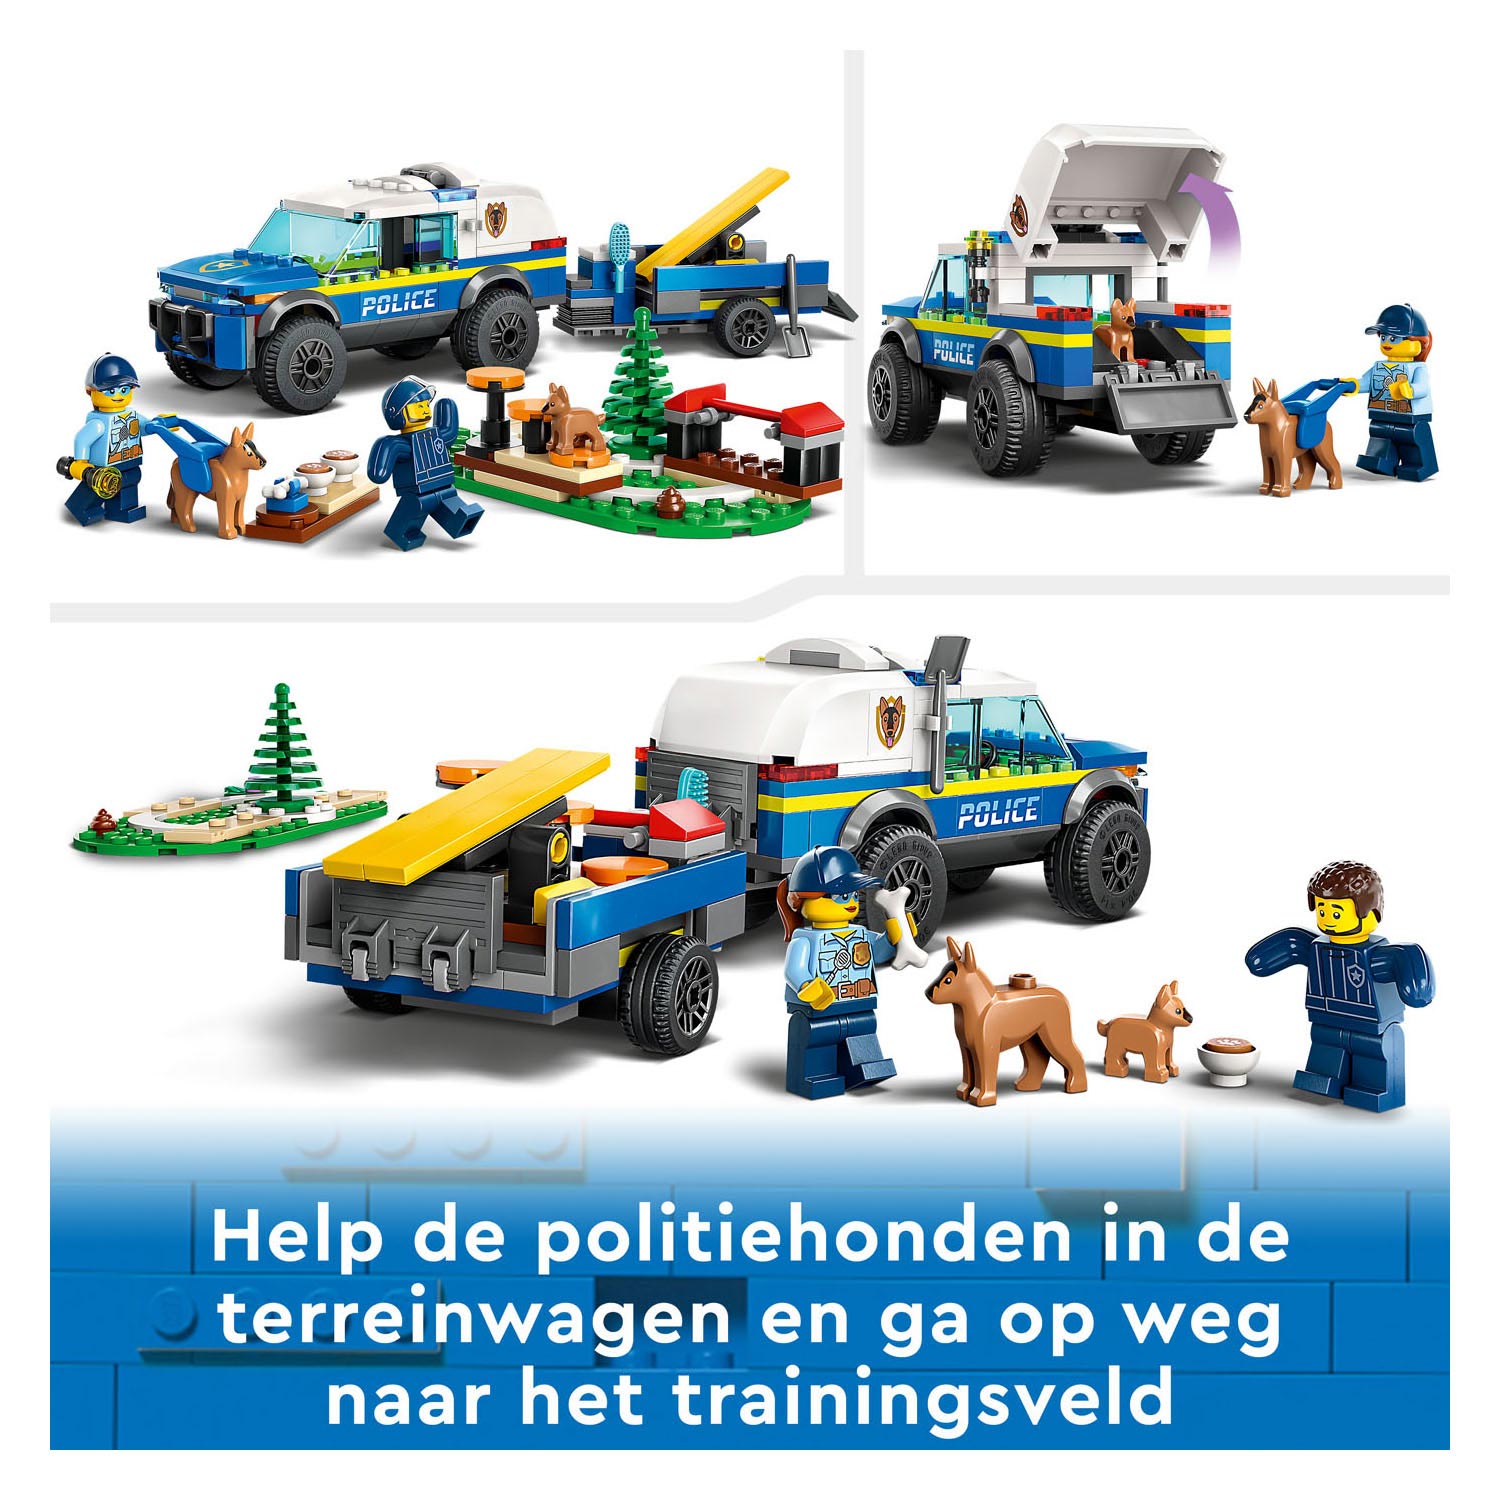 LEGO City 60369 Entraînement mobile pour chiens policiers